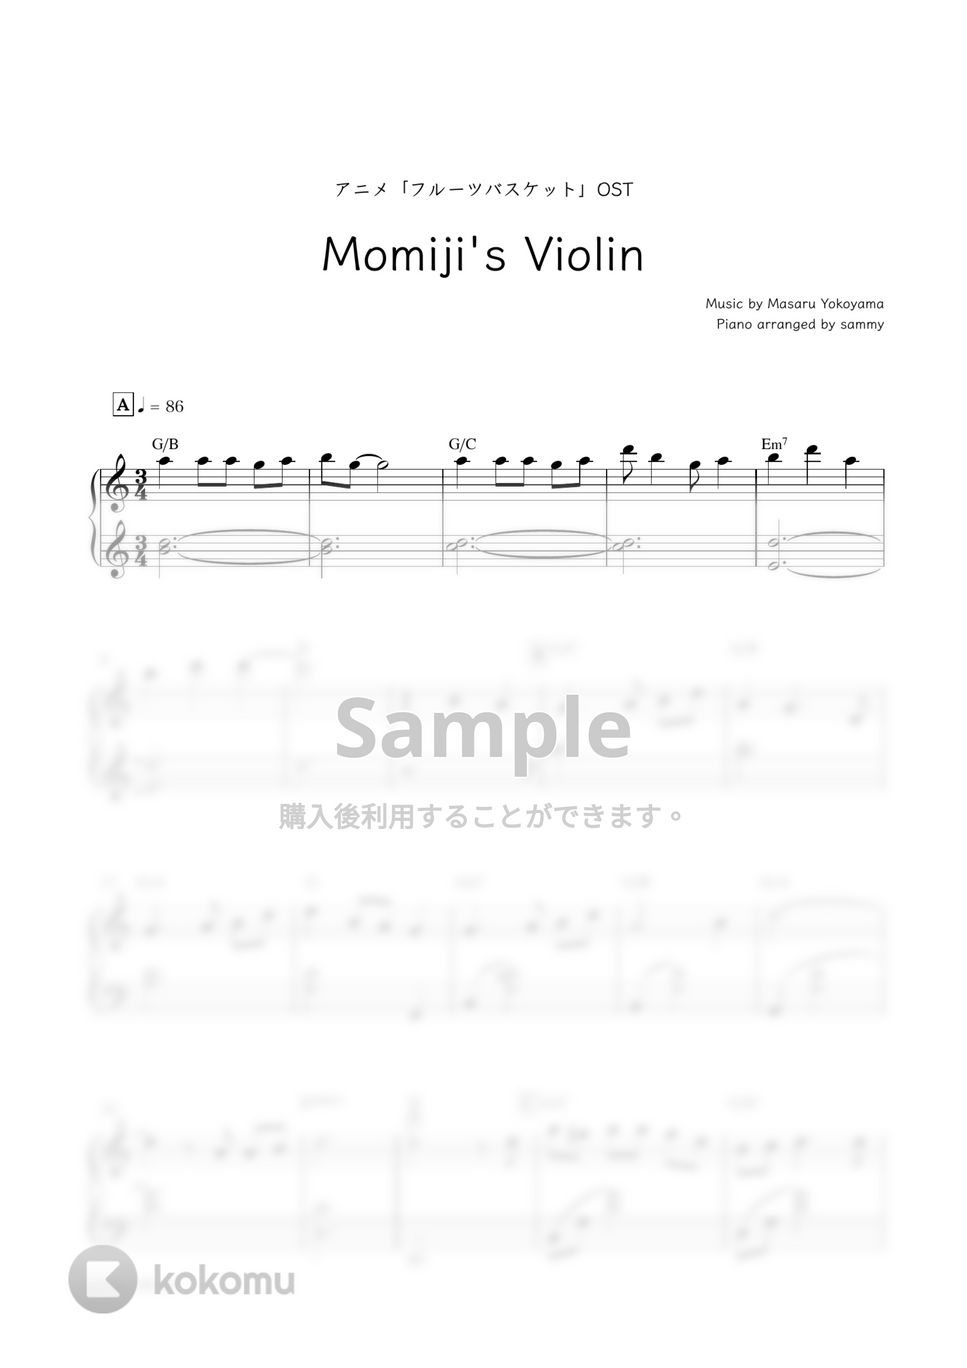 アニメ『フルーツバスケット』OST - Momiji's Violin by sammy